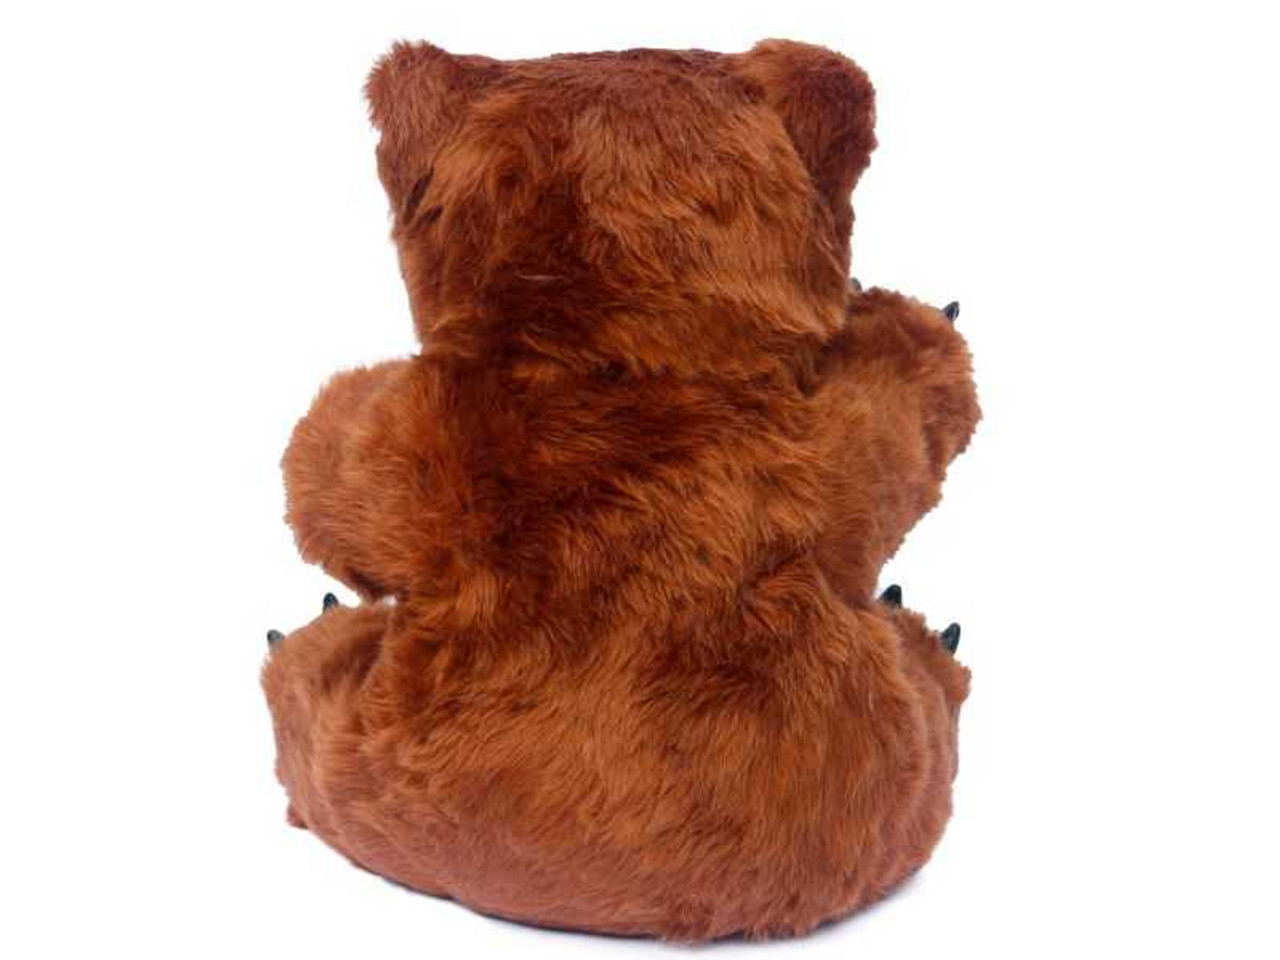 Creepy Teddy Bear